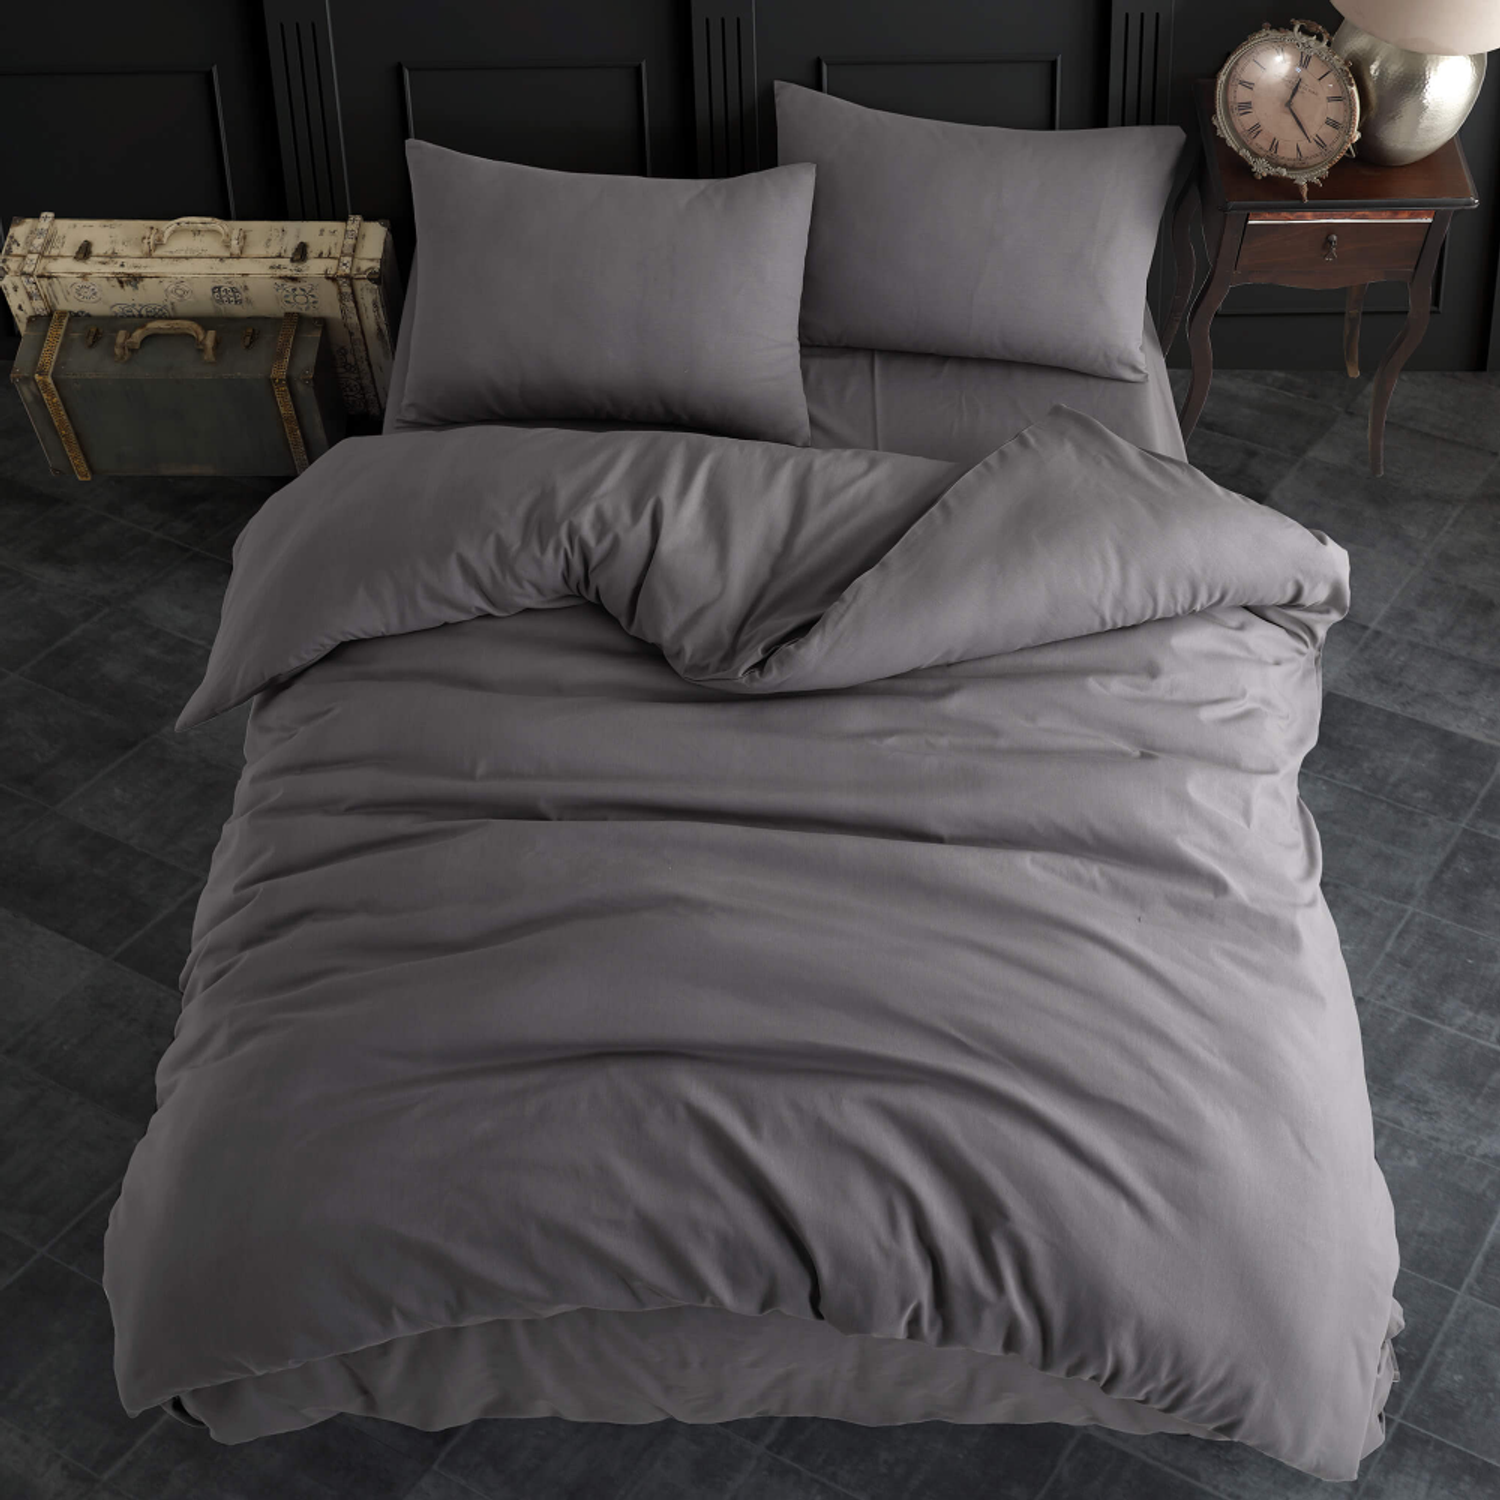 Комплект постельного белья ATLASPLUS размер Евро ранфорс хлопок цвет серый - фото 2